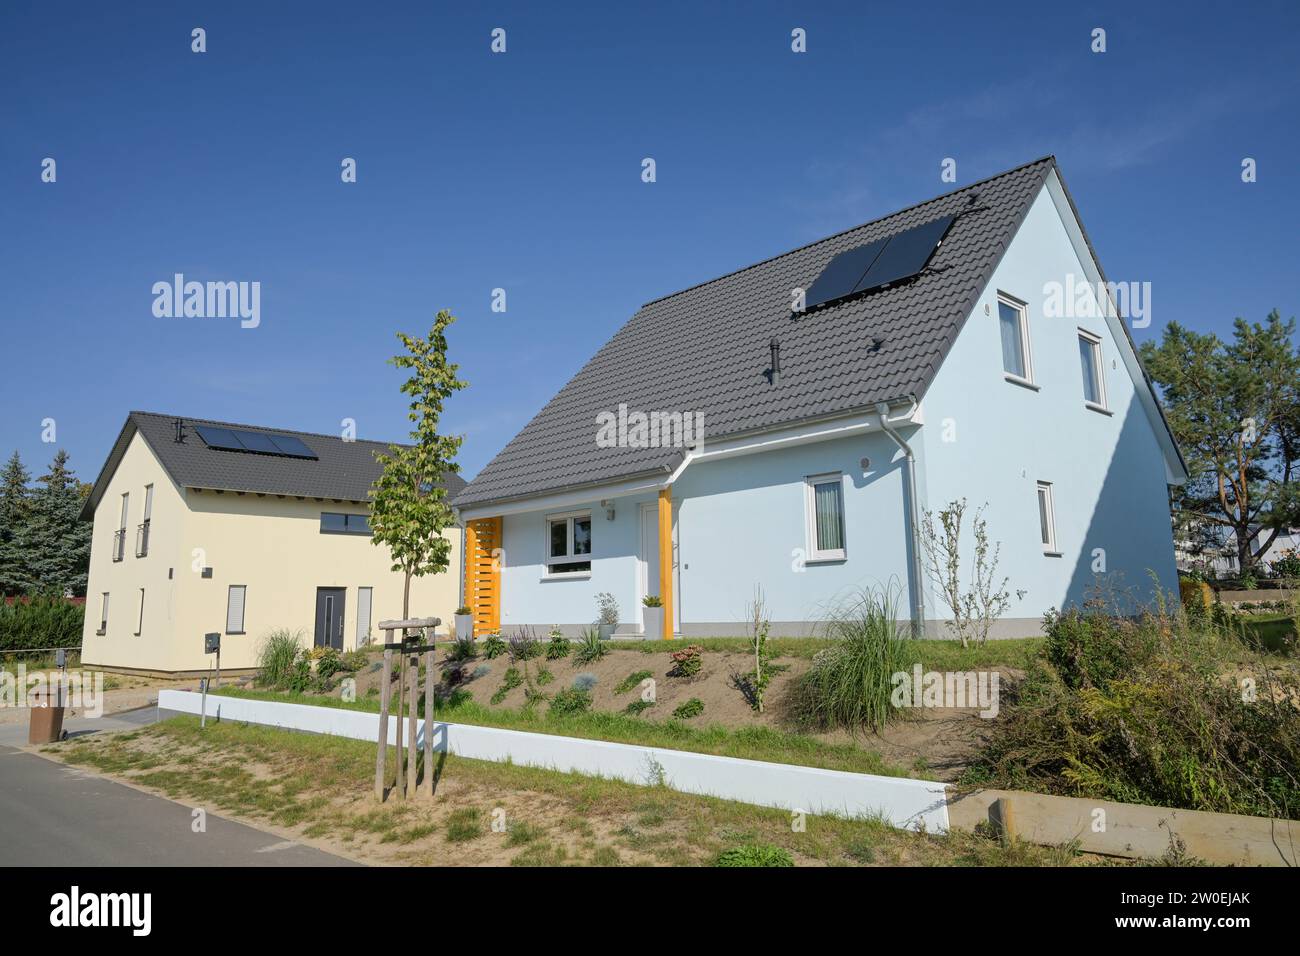 Einfamilienhaus, Neubaugebiet Am Rüggen Ost, Melchow am Rügen, Brandenburg, Deutschland Stock Photo